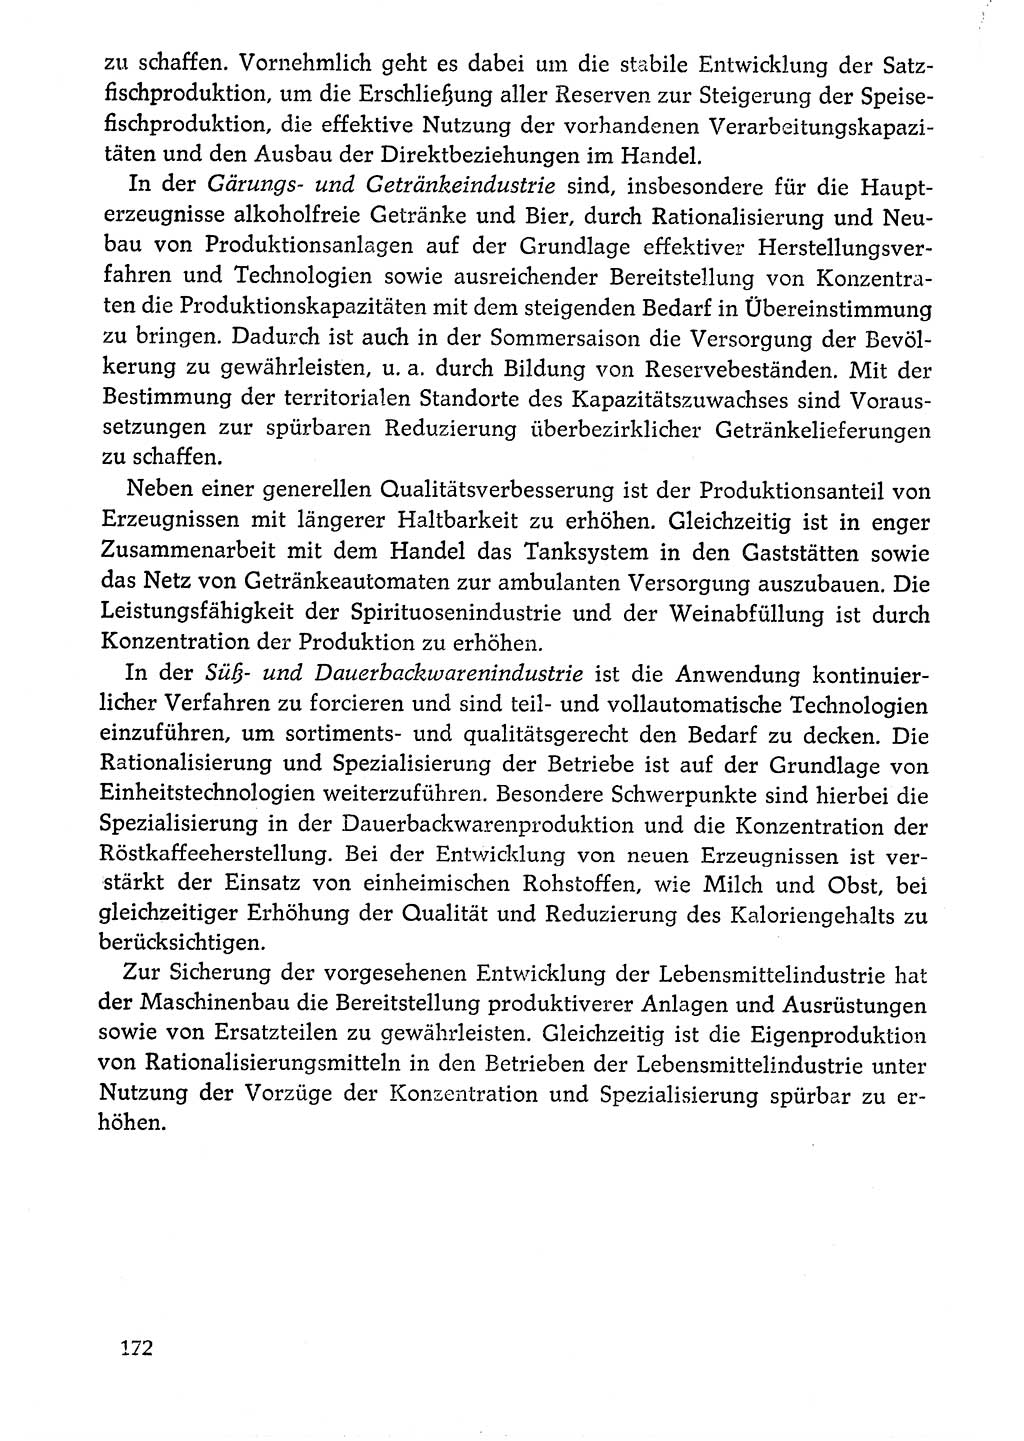 Dokumente der Sozialistischen Einheitspartei Deutschlands (SED) [Deutsche Demokratische Republik (DDR)] 1976-1977, Seite 172 (Dok. SED DDR 1976-1977, S. 172)